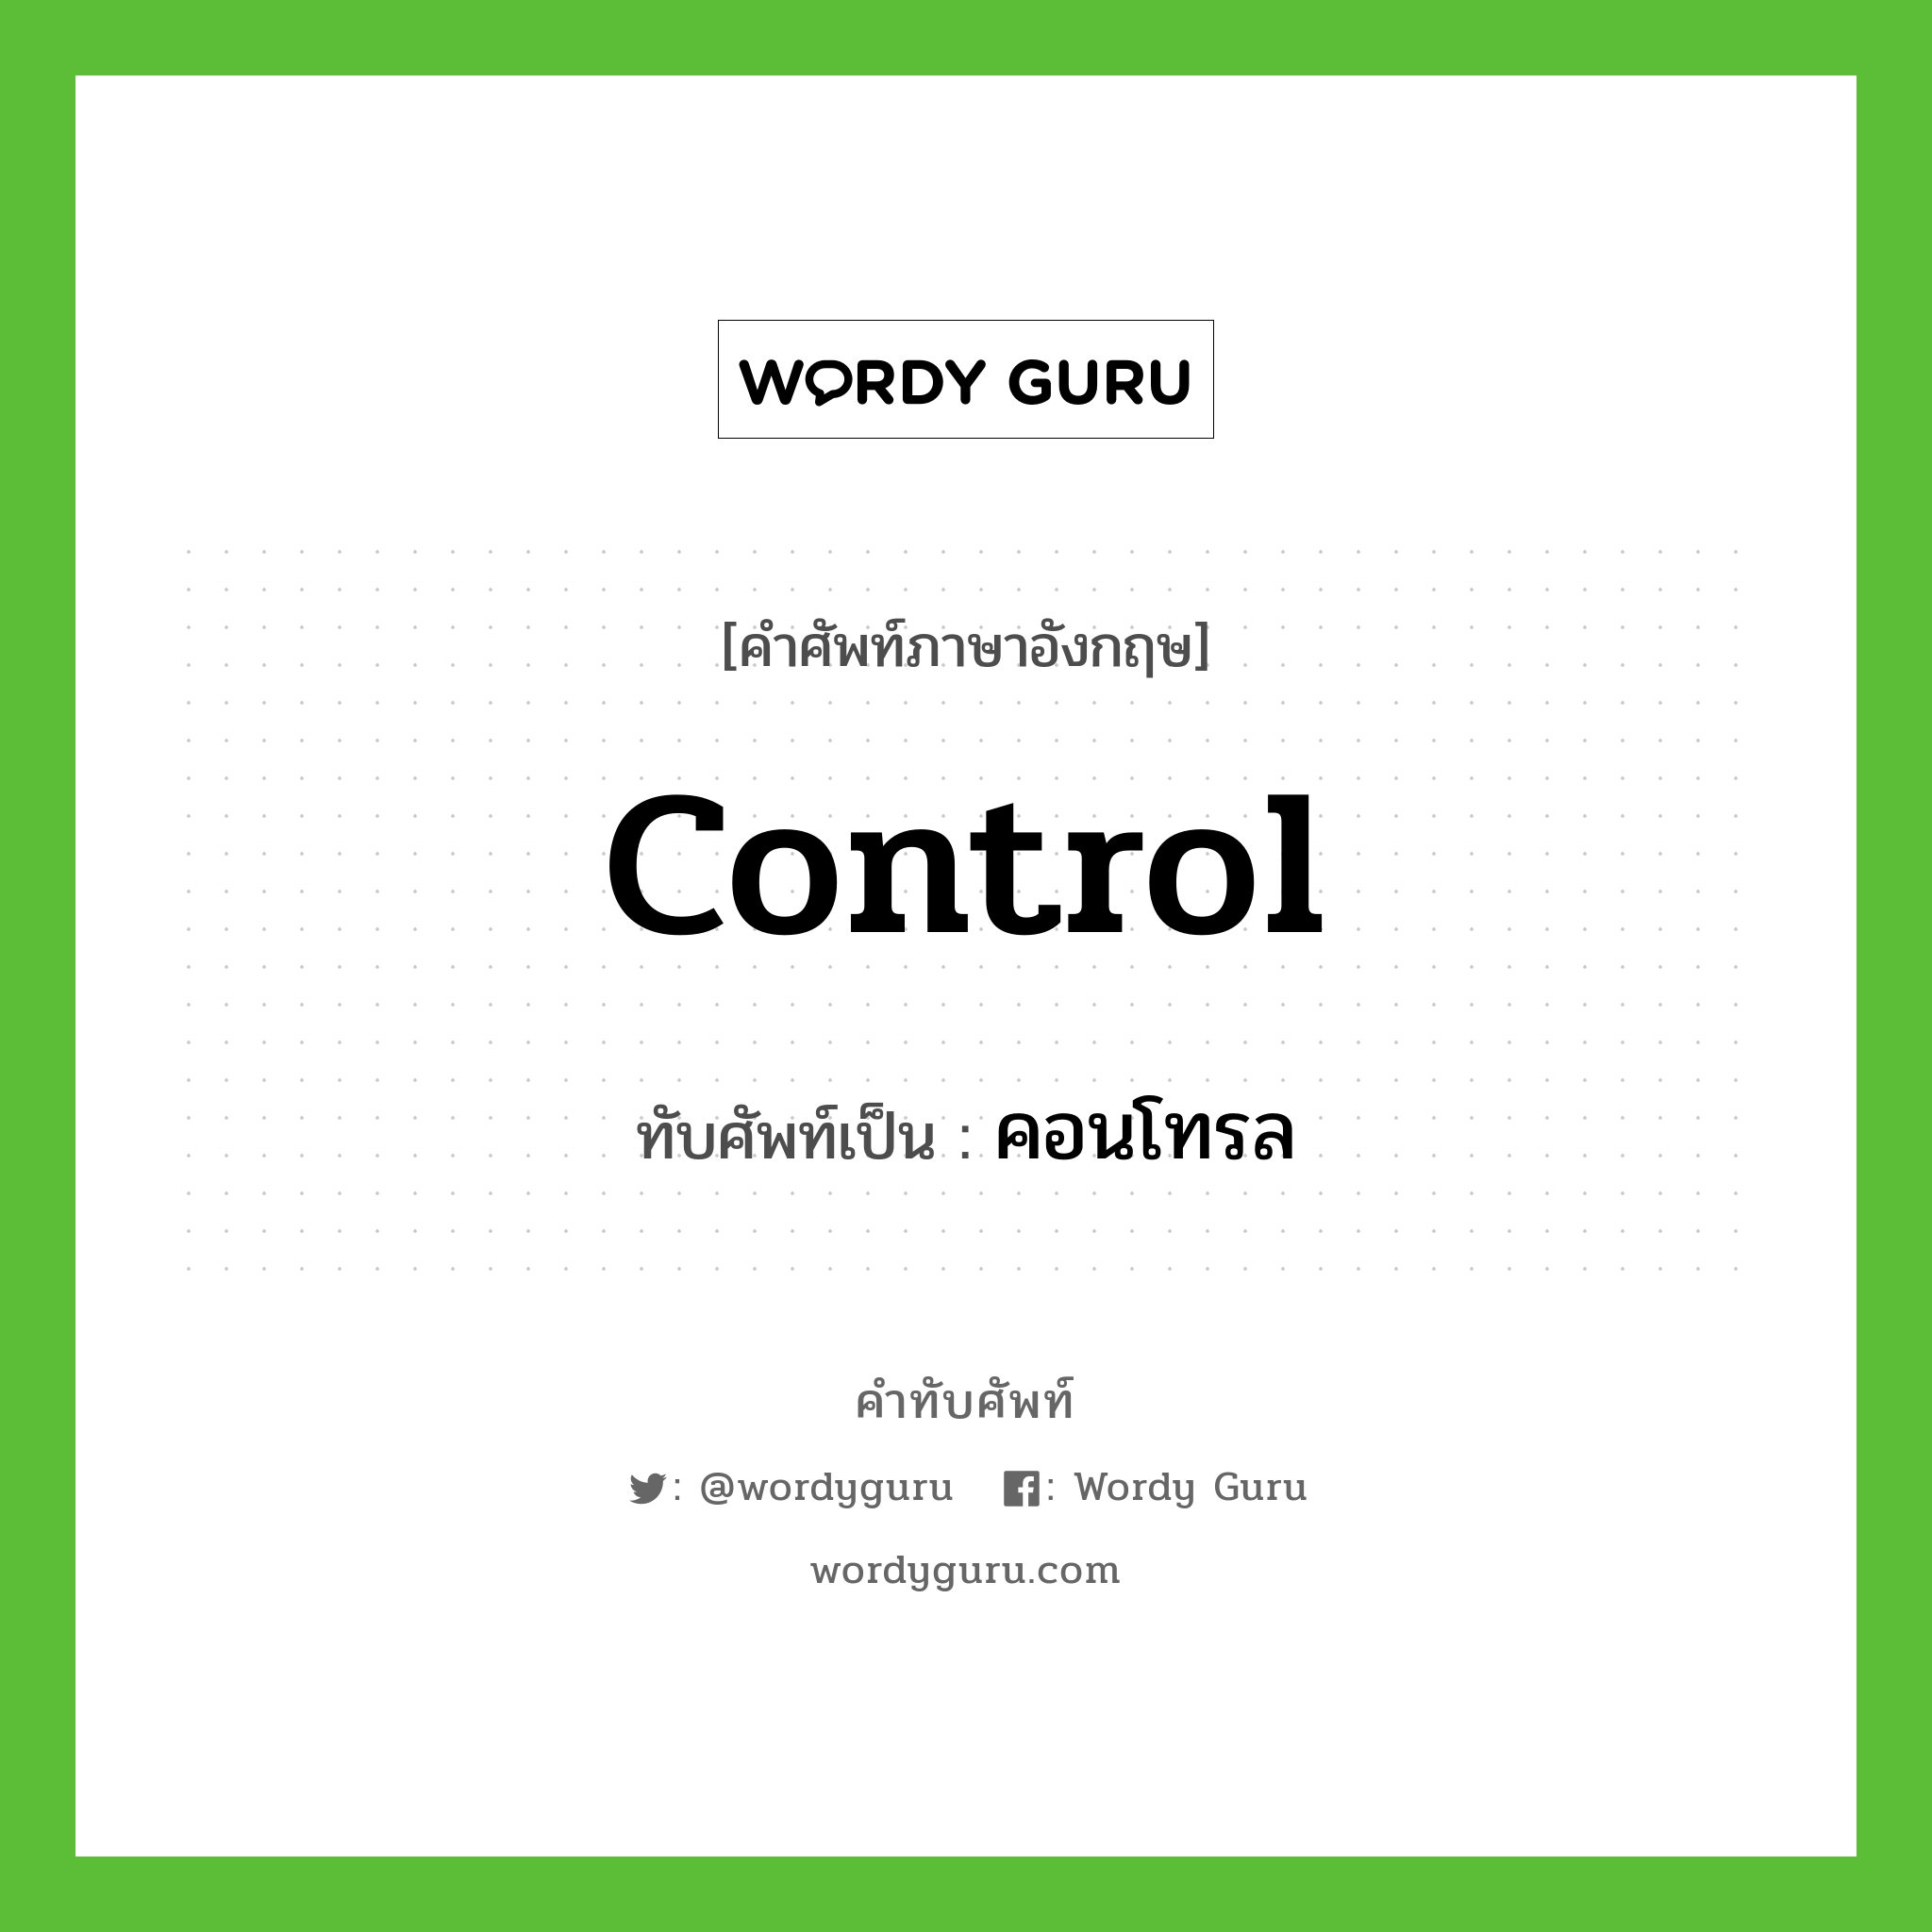 control เขียนเป็นคำไทยว่าอะไร?, คำศัพท์ภาษาอังกฤษ control ทับศัพท์เป็น คอนโทรล